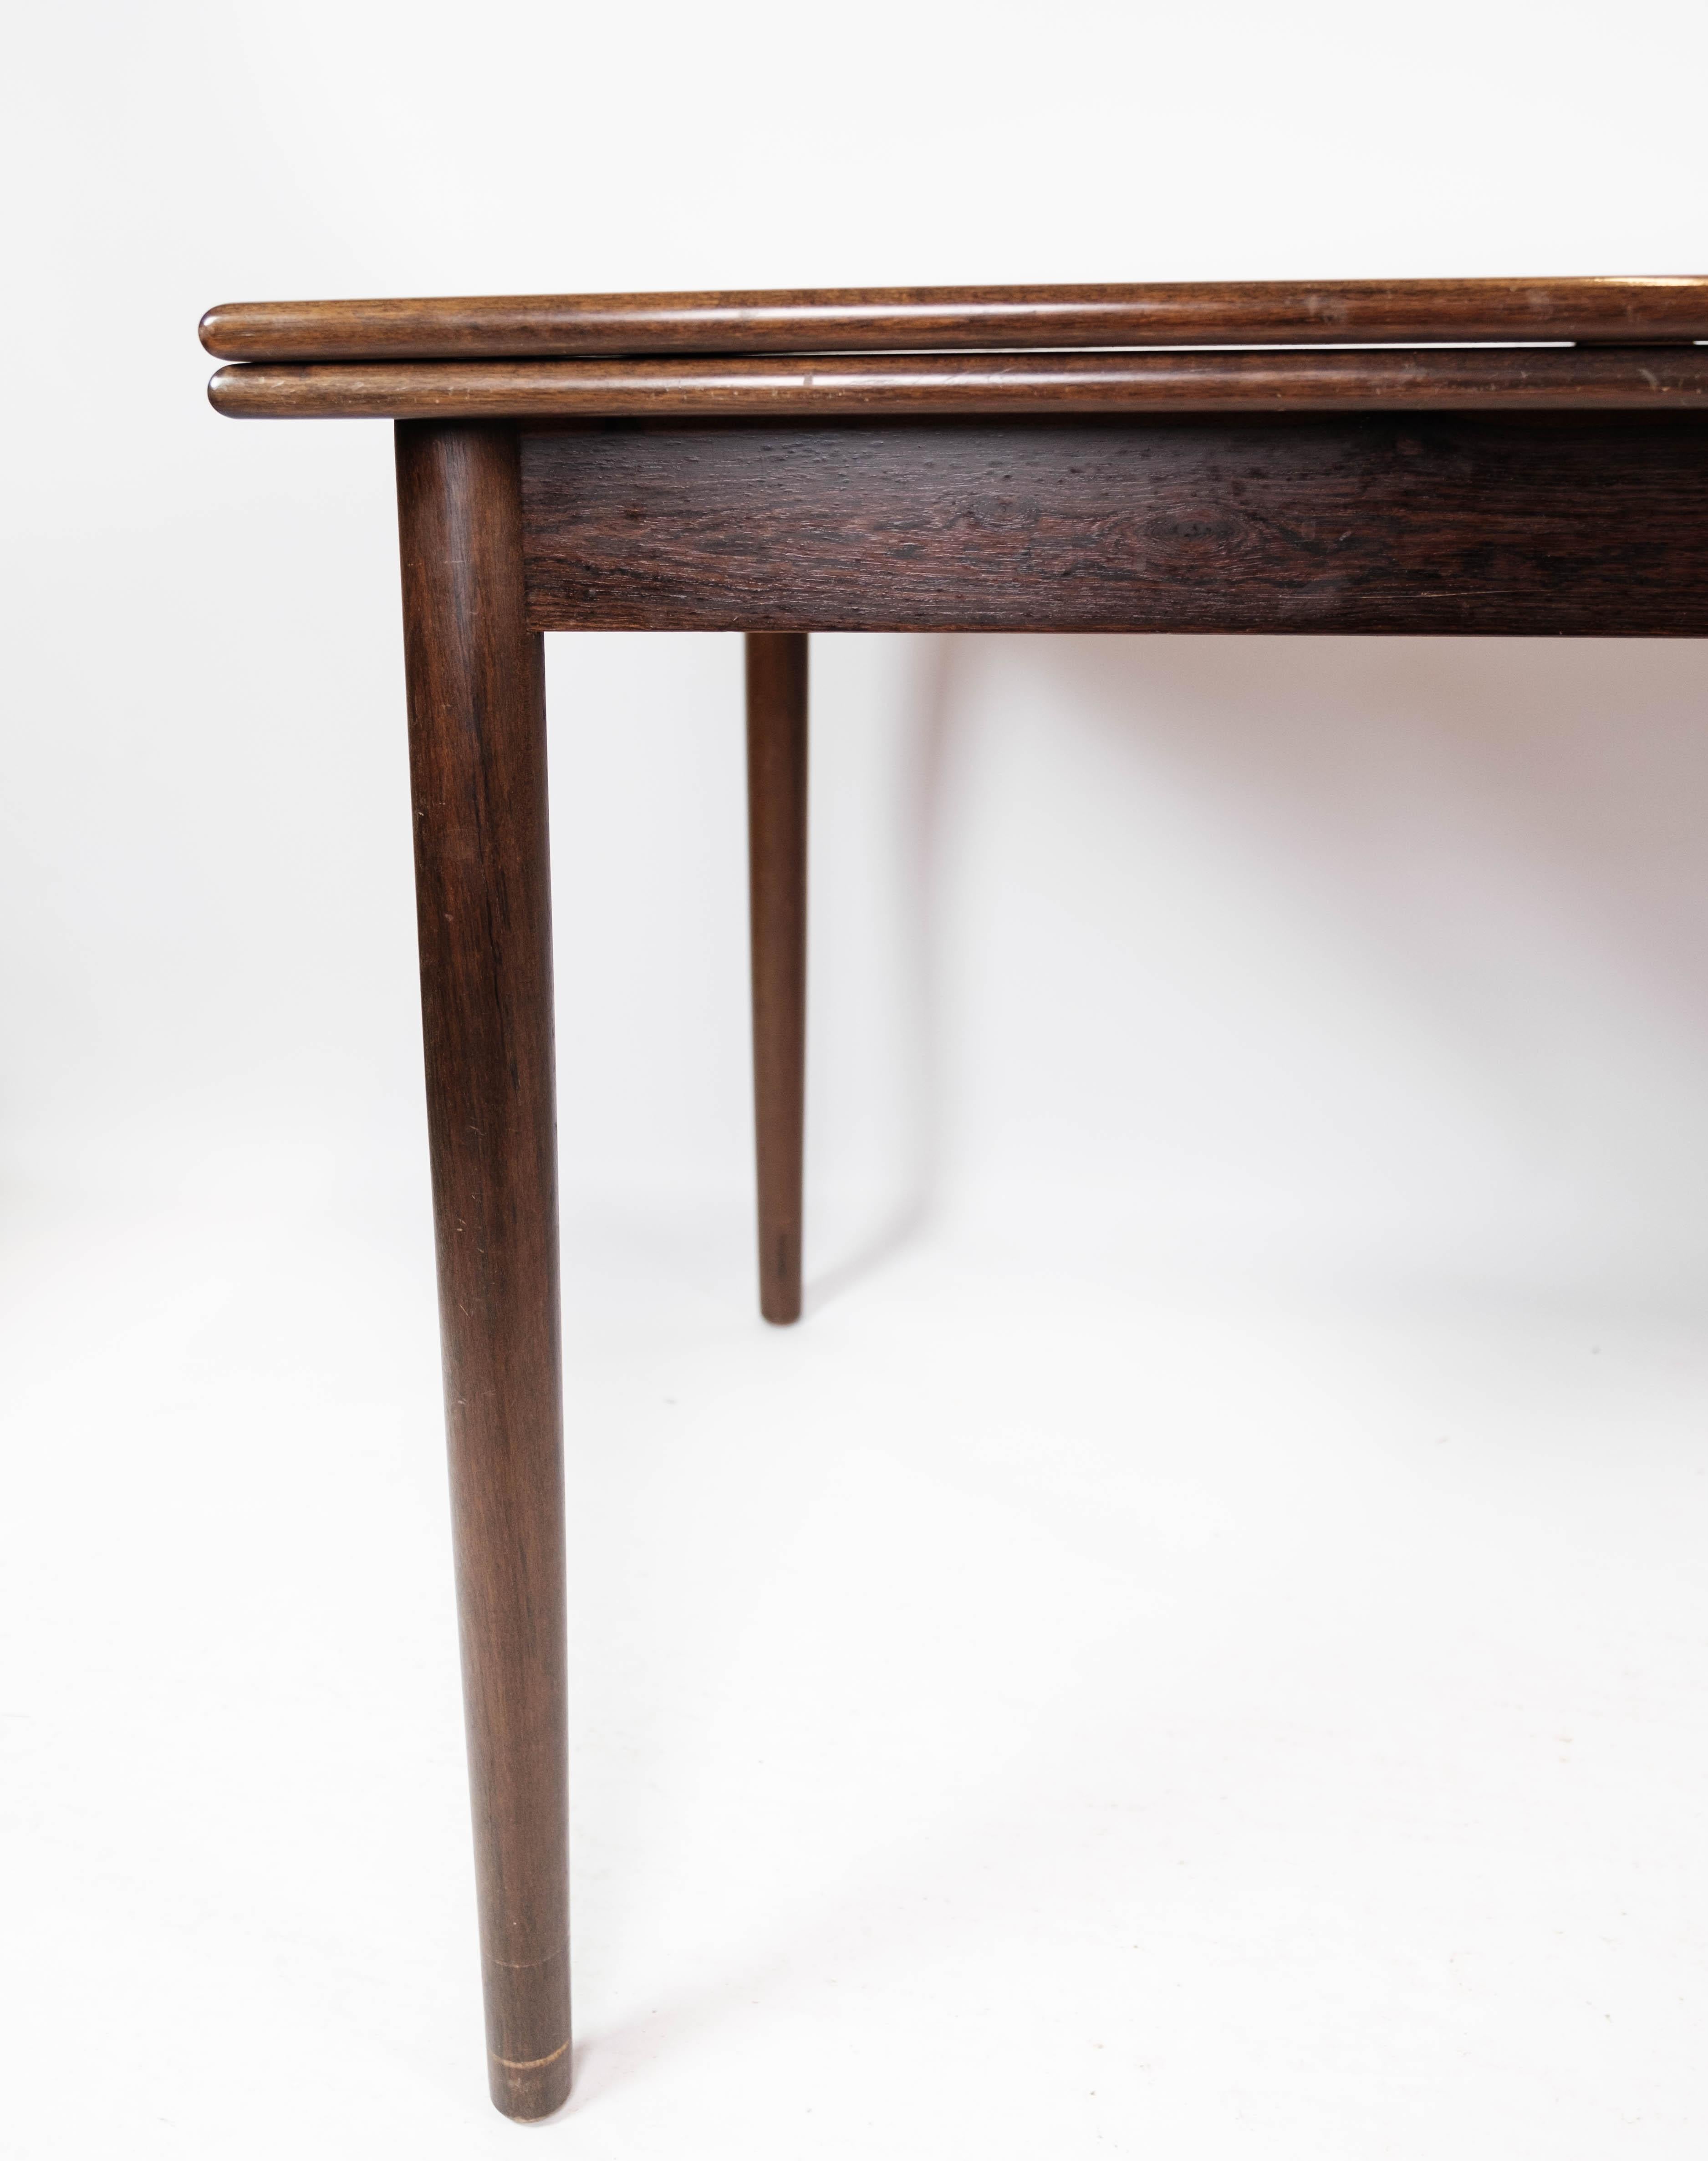 La table de salle à manger, fabriquée en bois de rose et dotée d'un design danois des années 1960, est un exemple étonnant de l'élégance moderne du milieu du siècle.

Fabriquée en bois de rose, réputé pour ses teintes riches et ses veinures